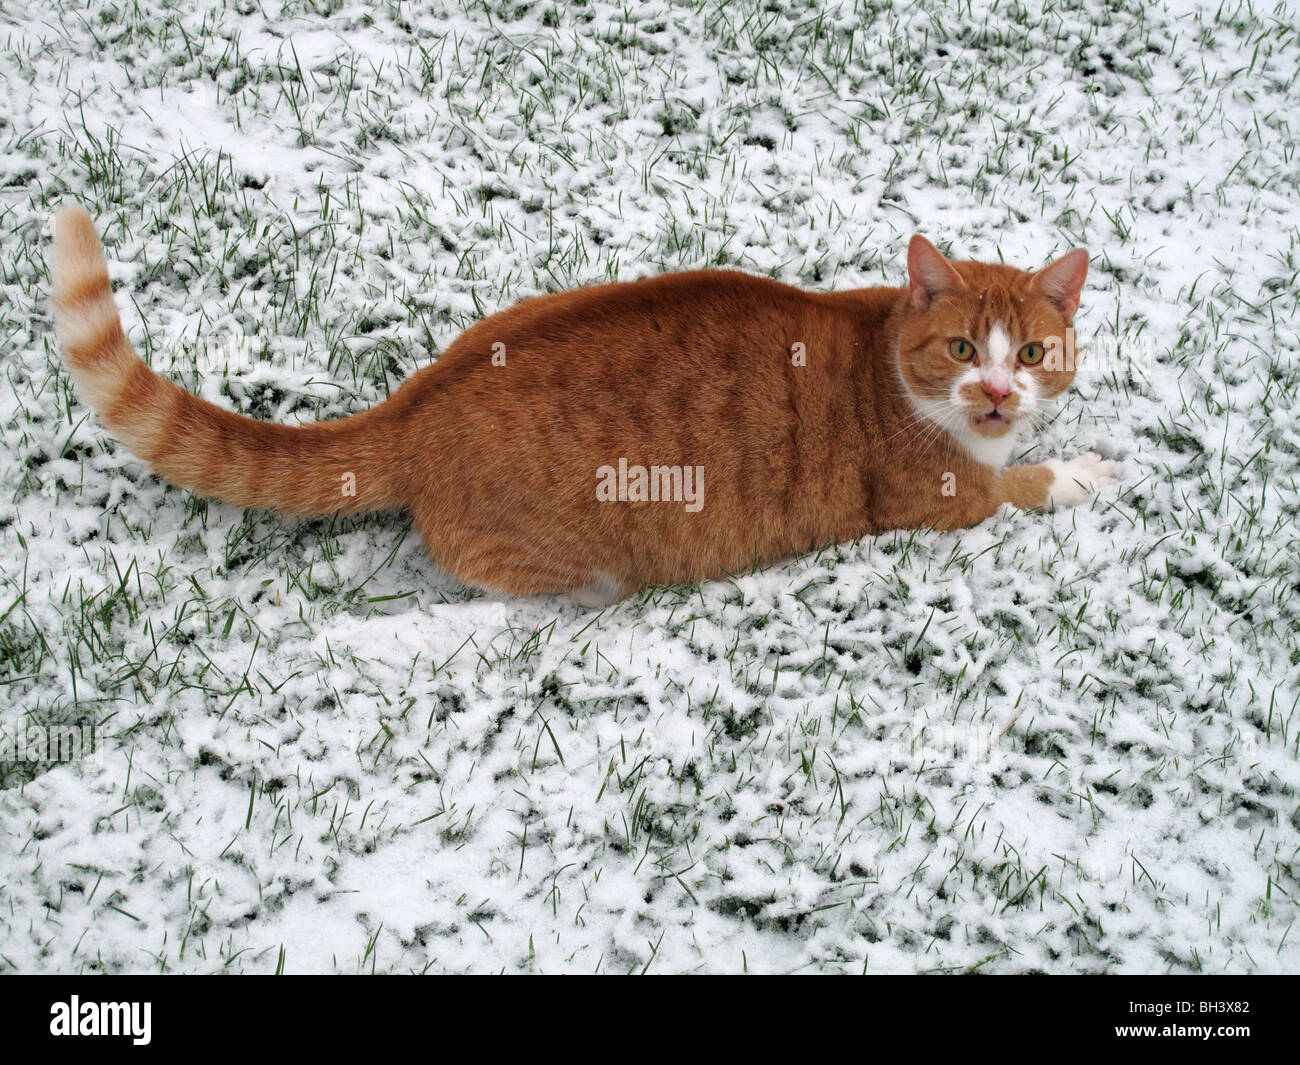 Un gato de jengibre fresco en una luz de alerta de nieve que cubre la hierba Foto de stock